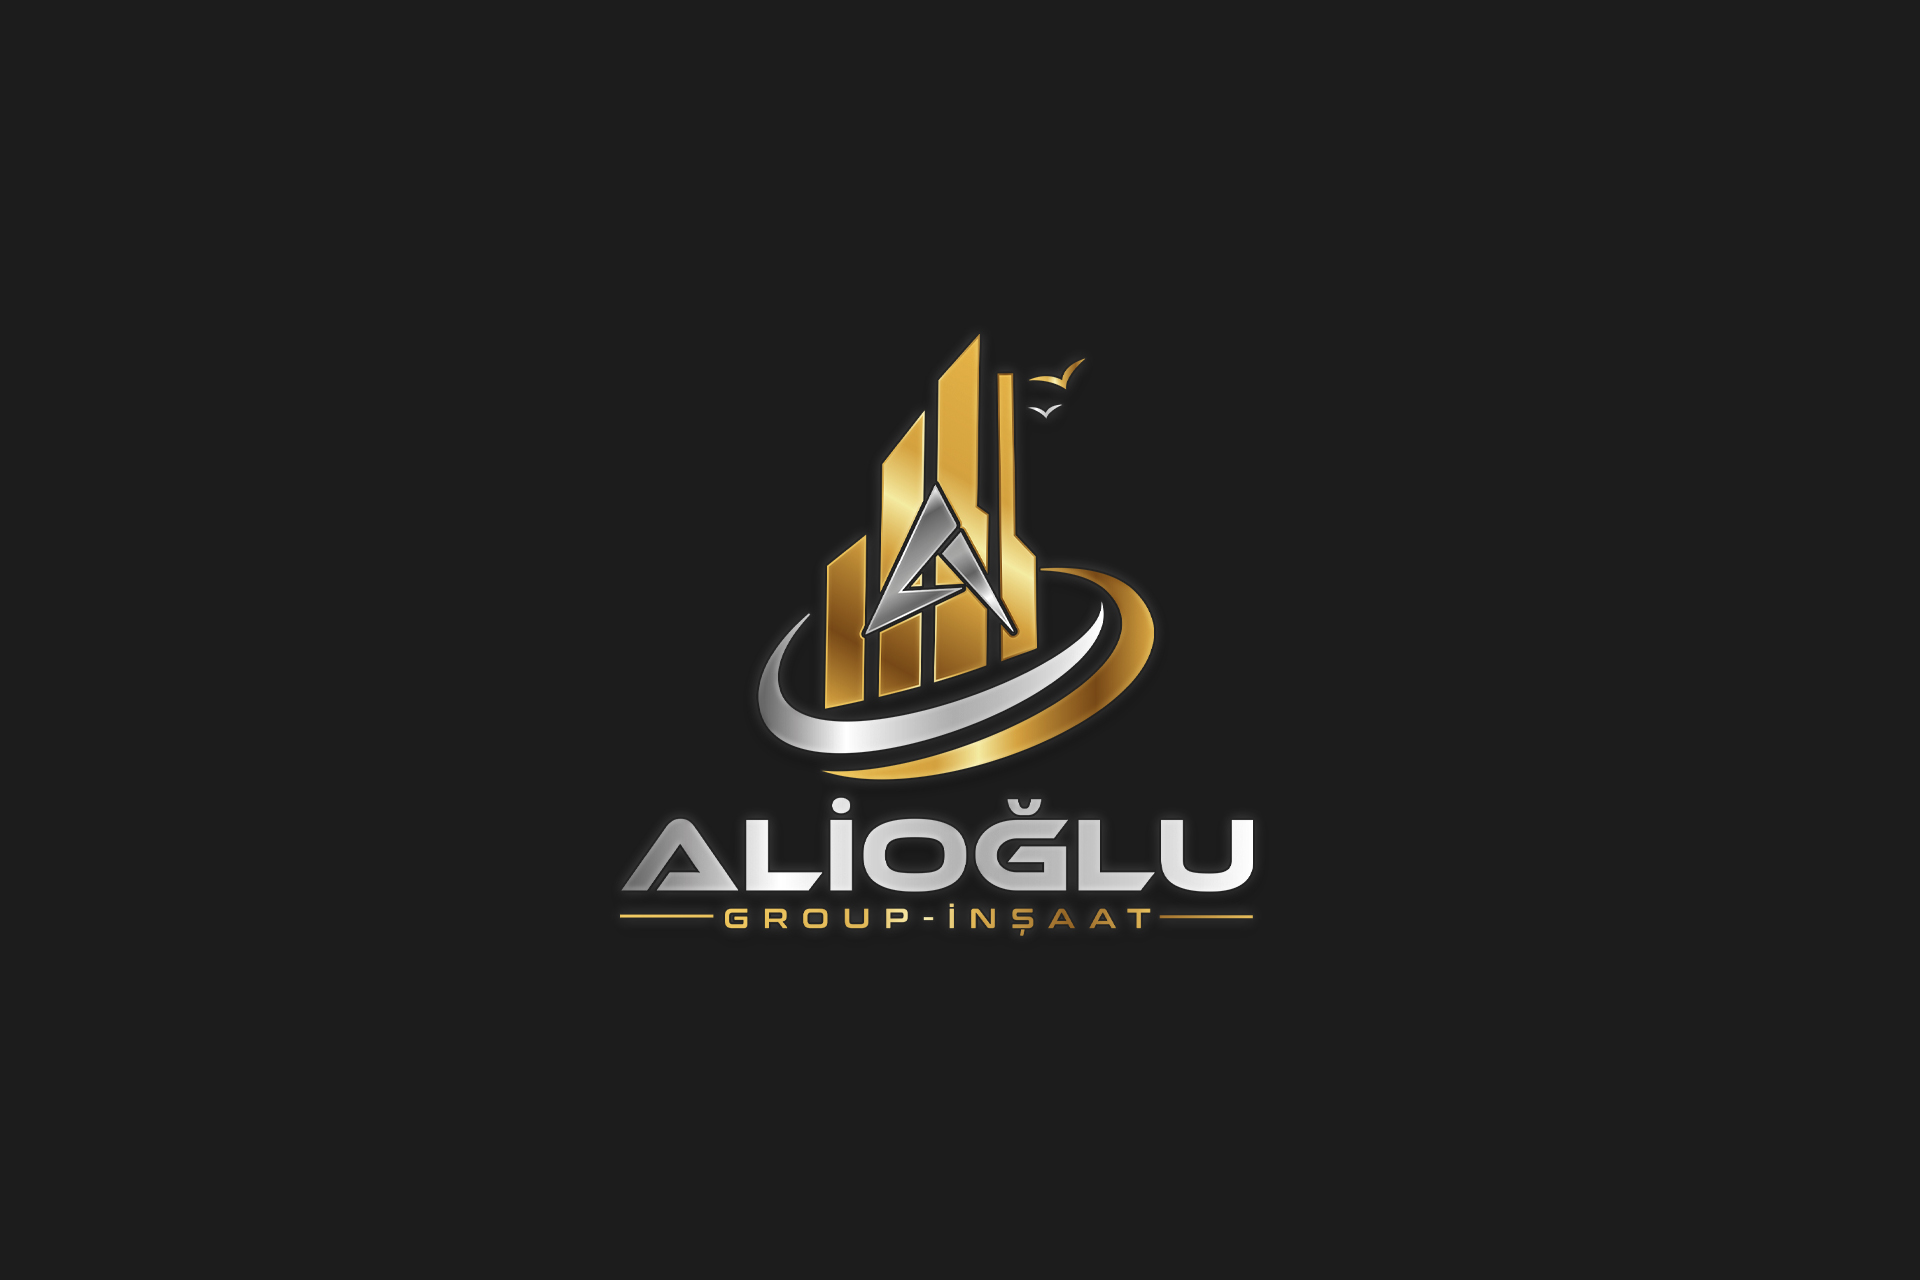 Alioğlu Group